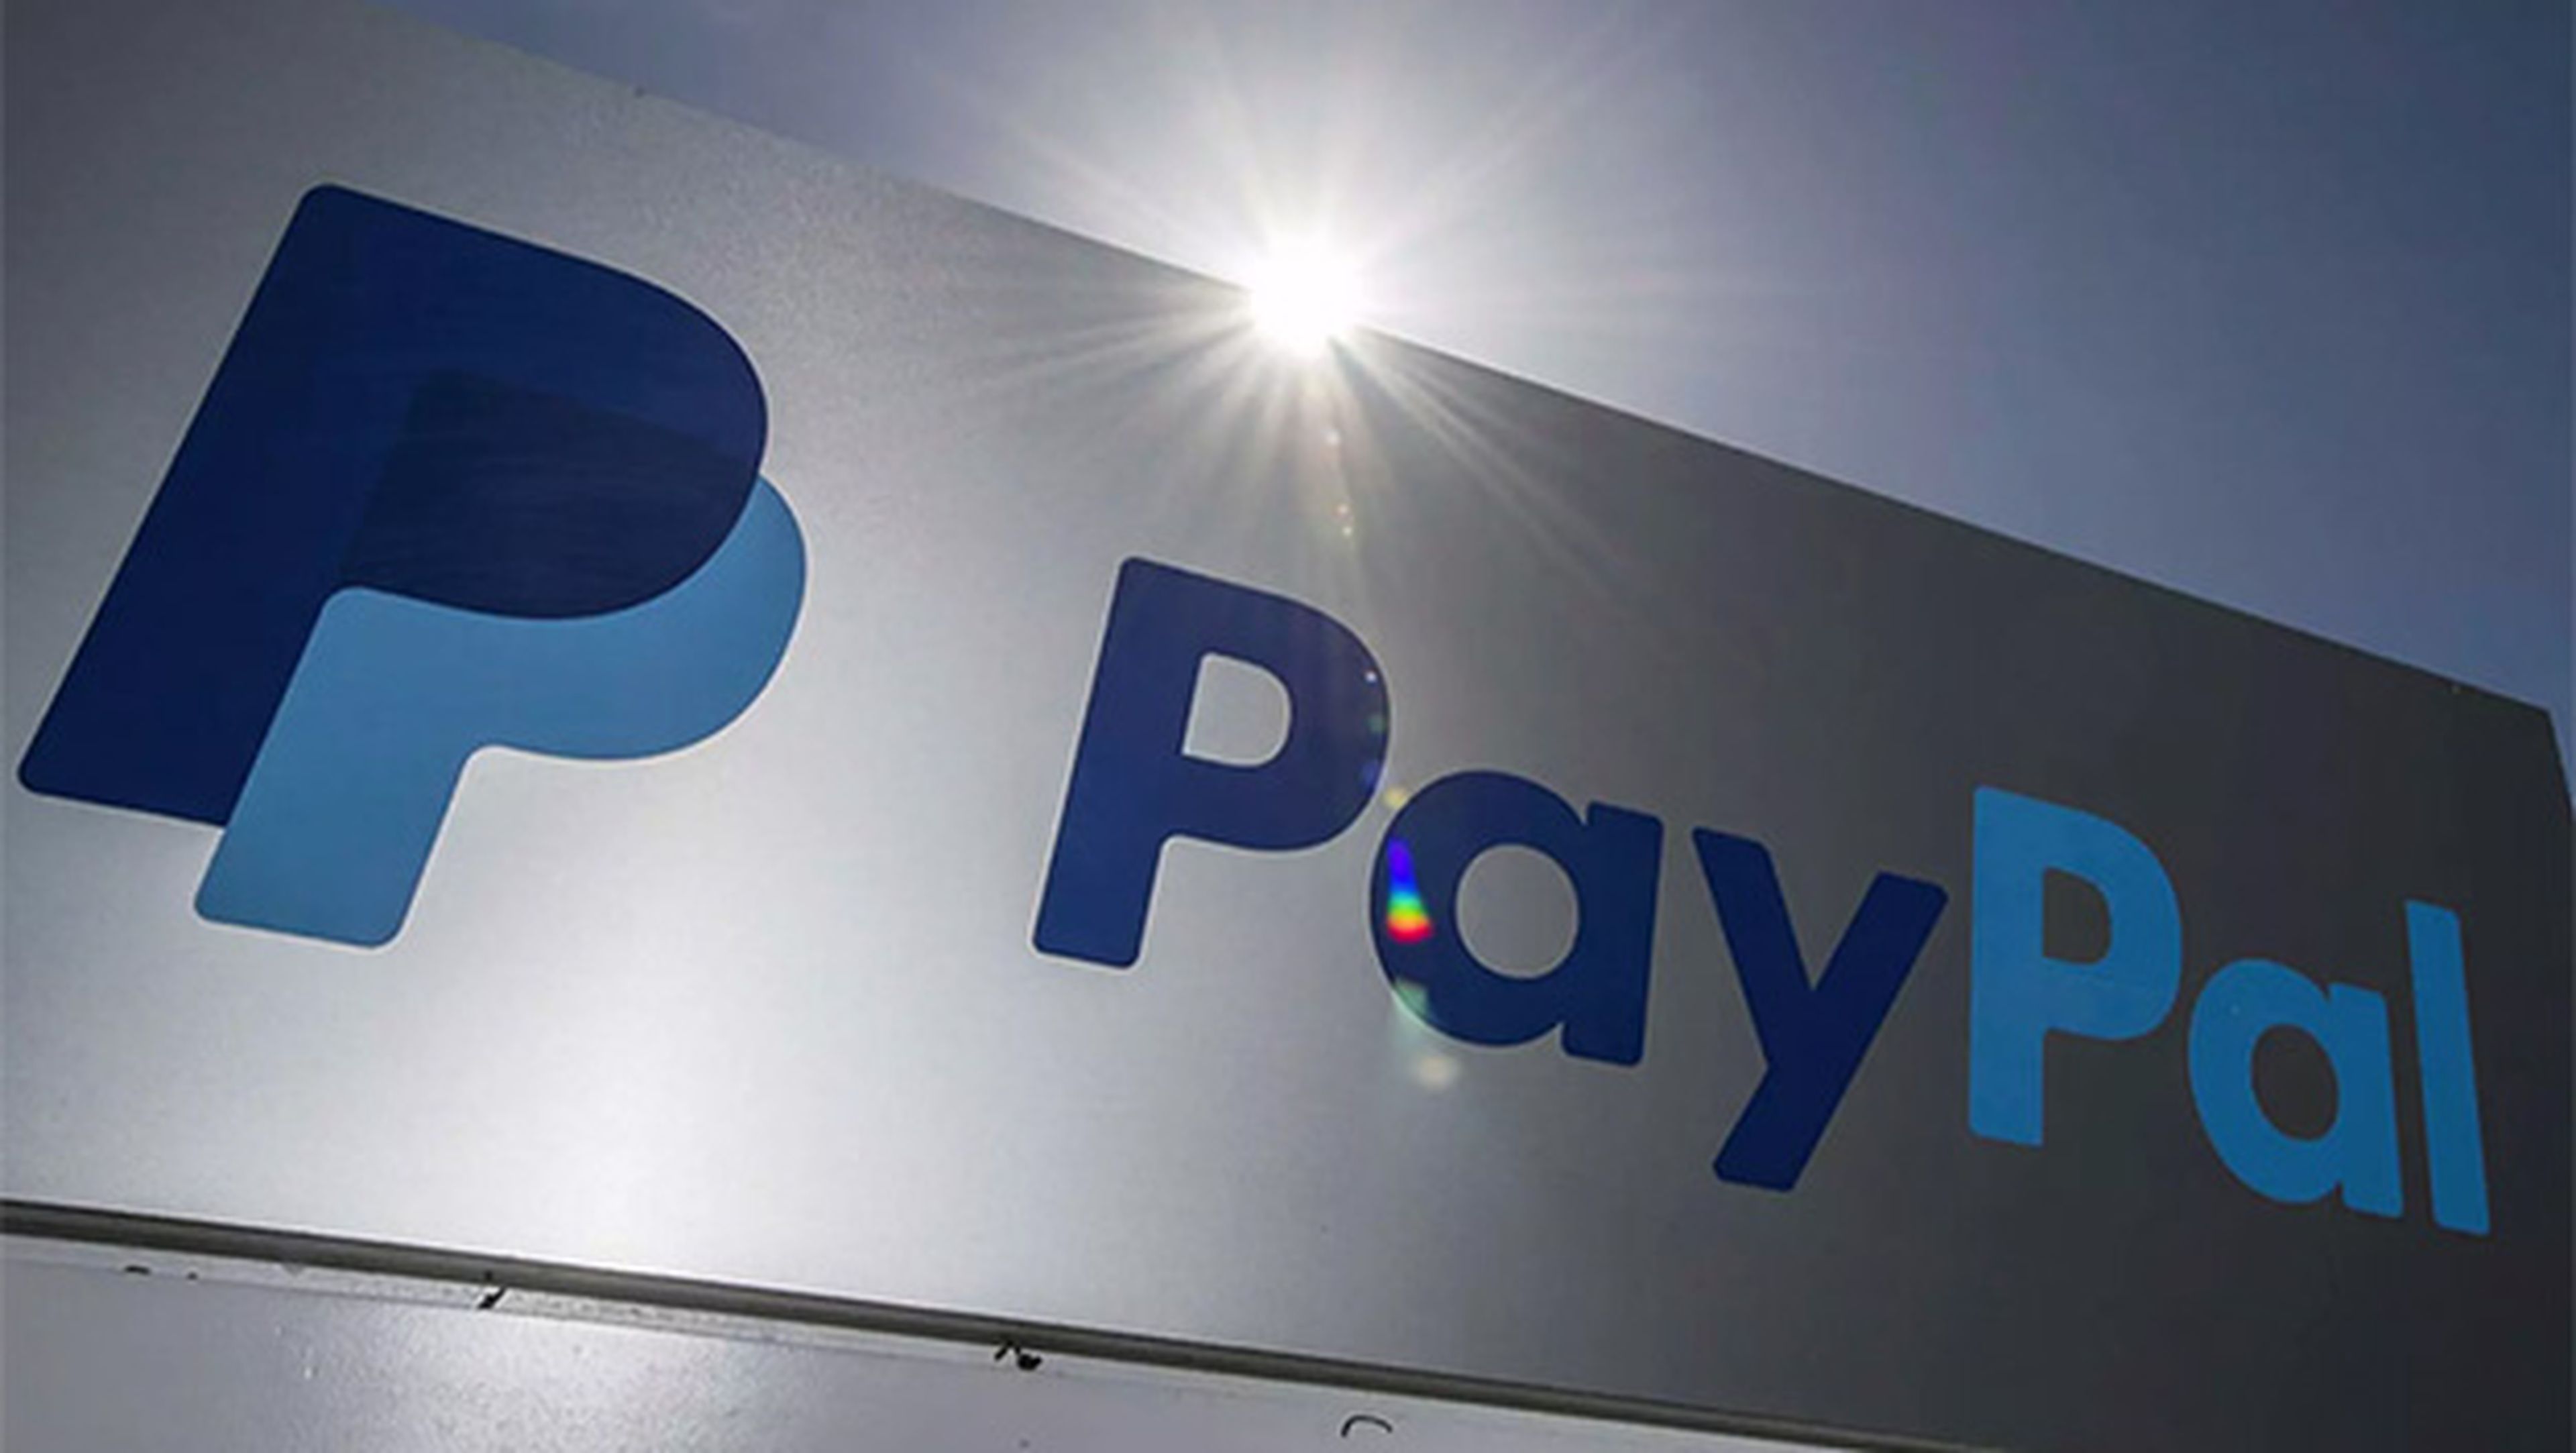 Facebook Messenger incorpora pagos por Paypal